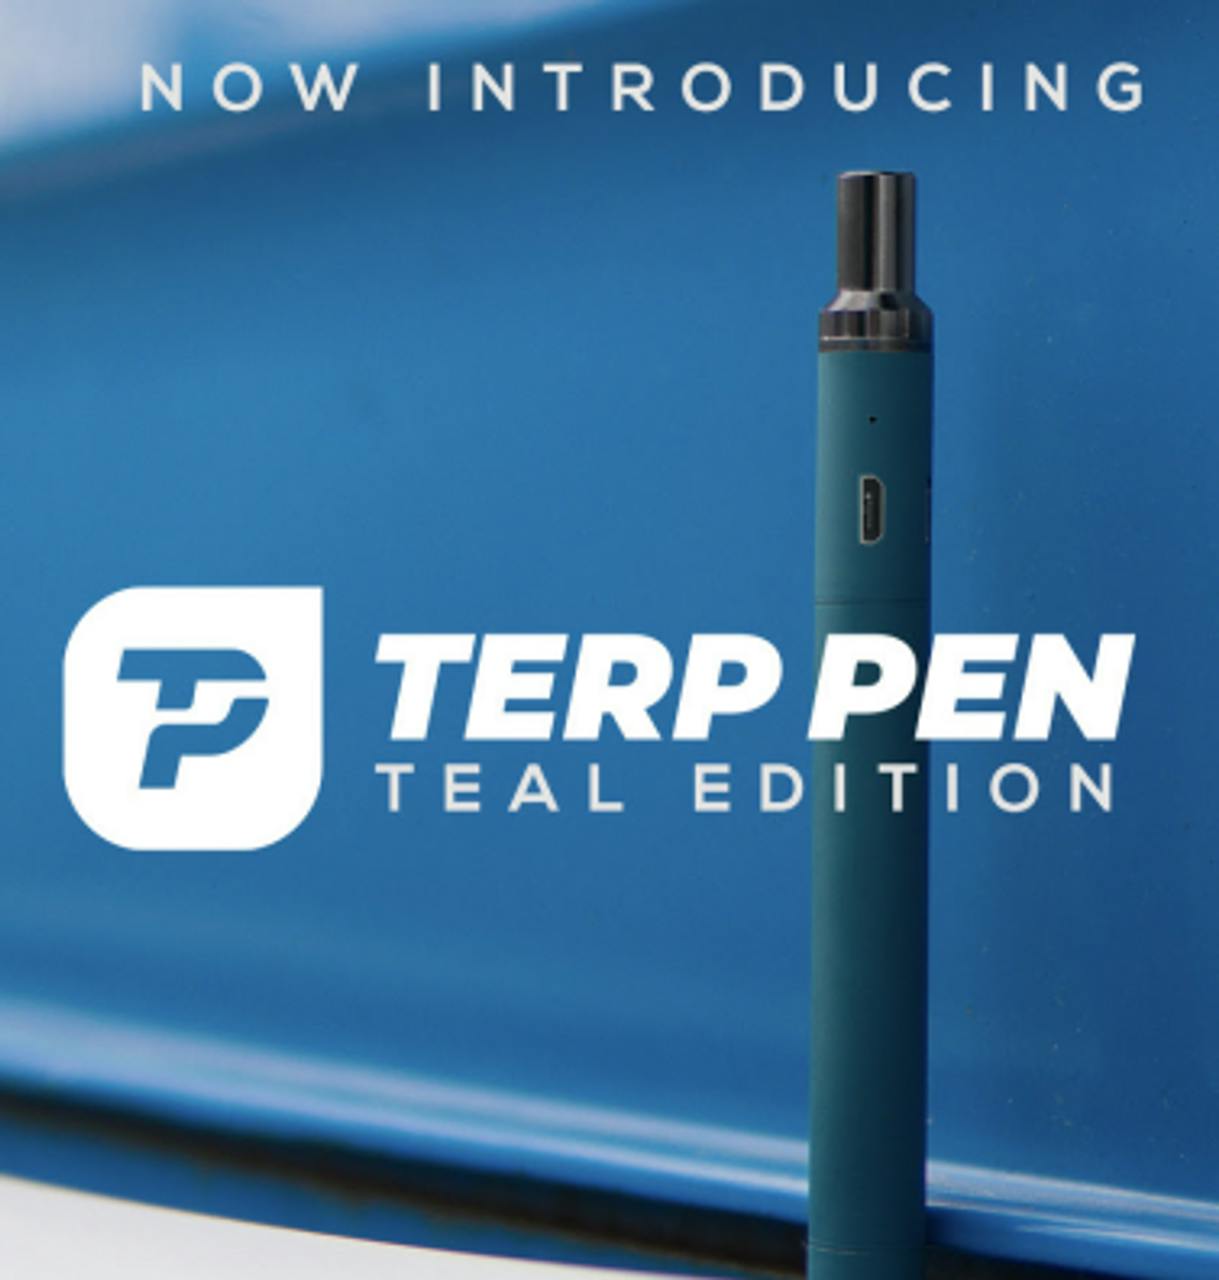 Boundless - The Terp Pen